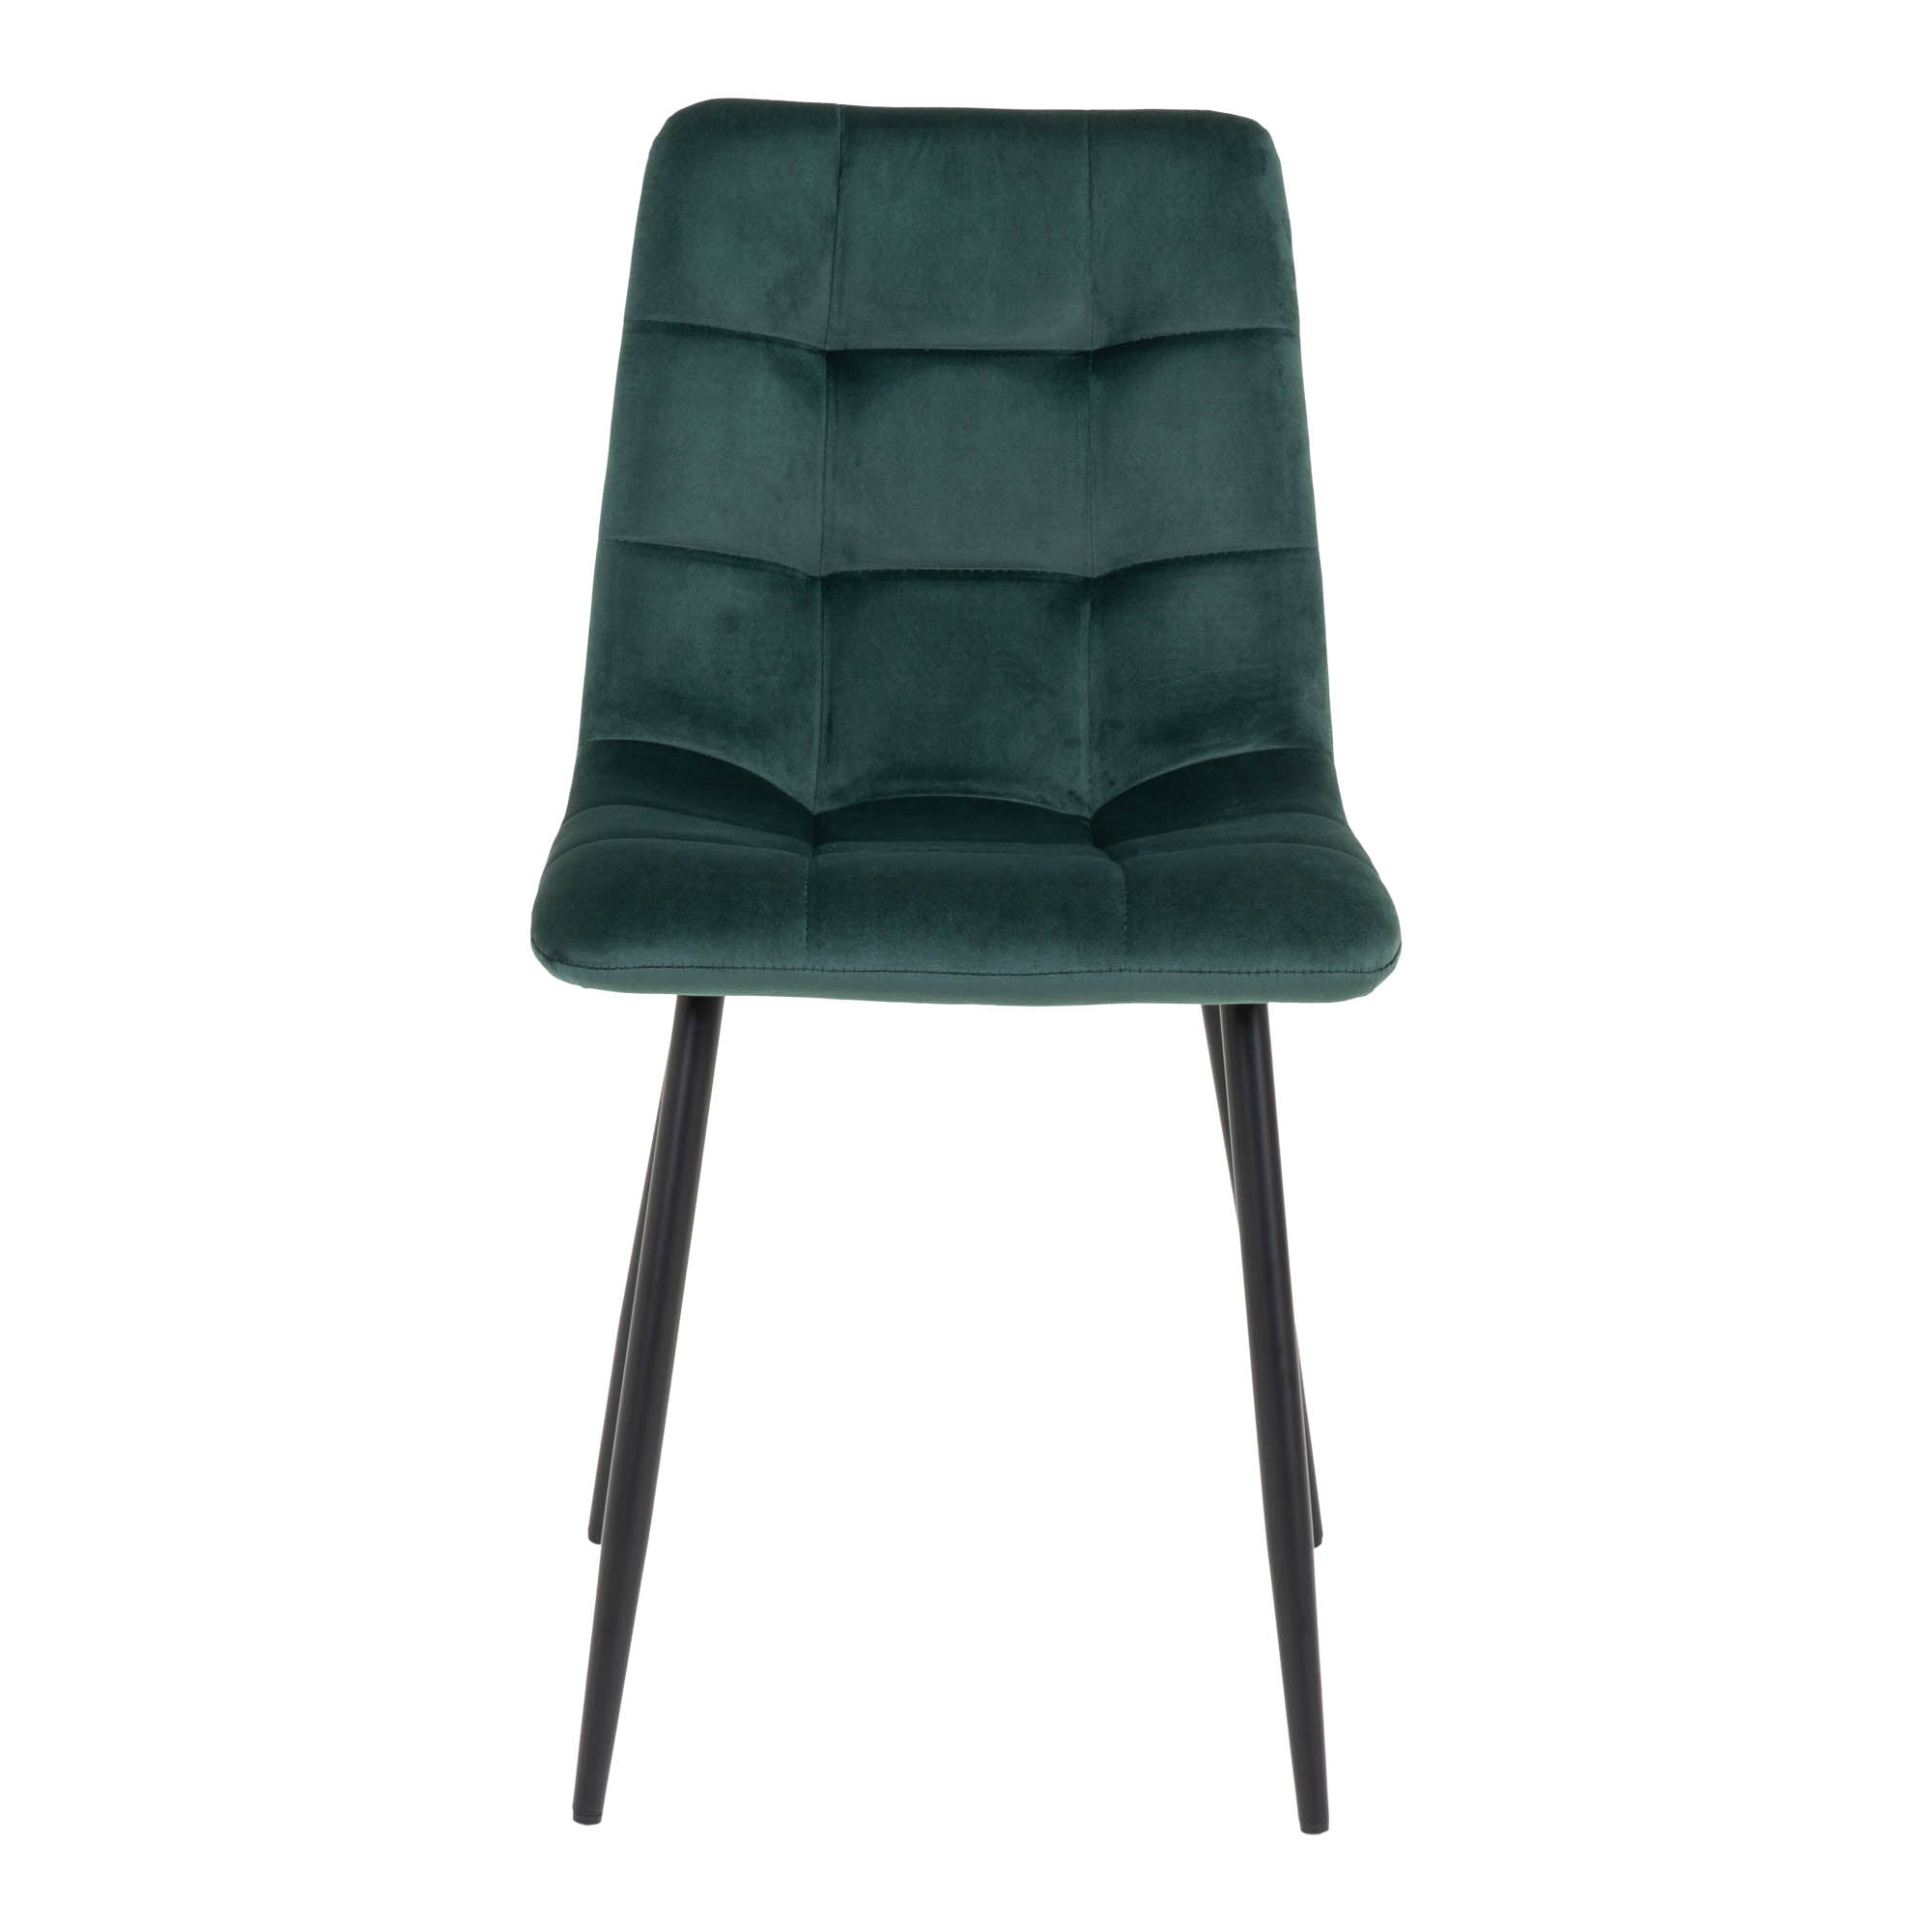 Middelfart Spisebordsstol - Spisebordsstol I Velour, Mørkegrøn Med Sorte Ben ⎮ Sæt af 2 stk. ⎮ 5713917007516 ⎮ 1001195 